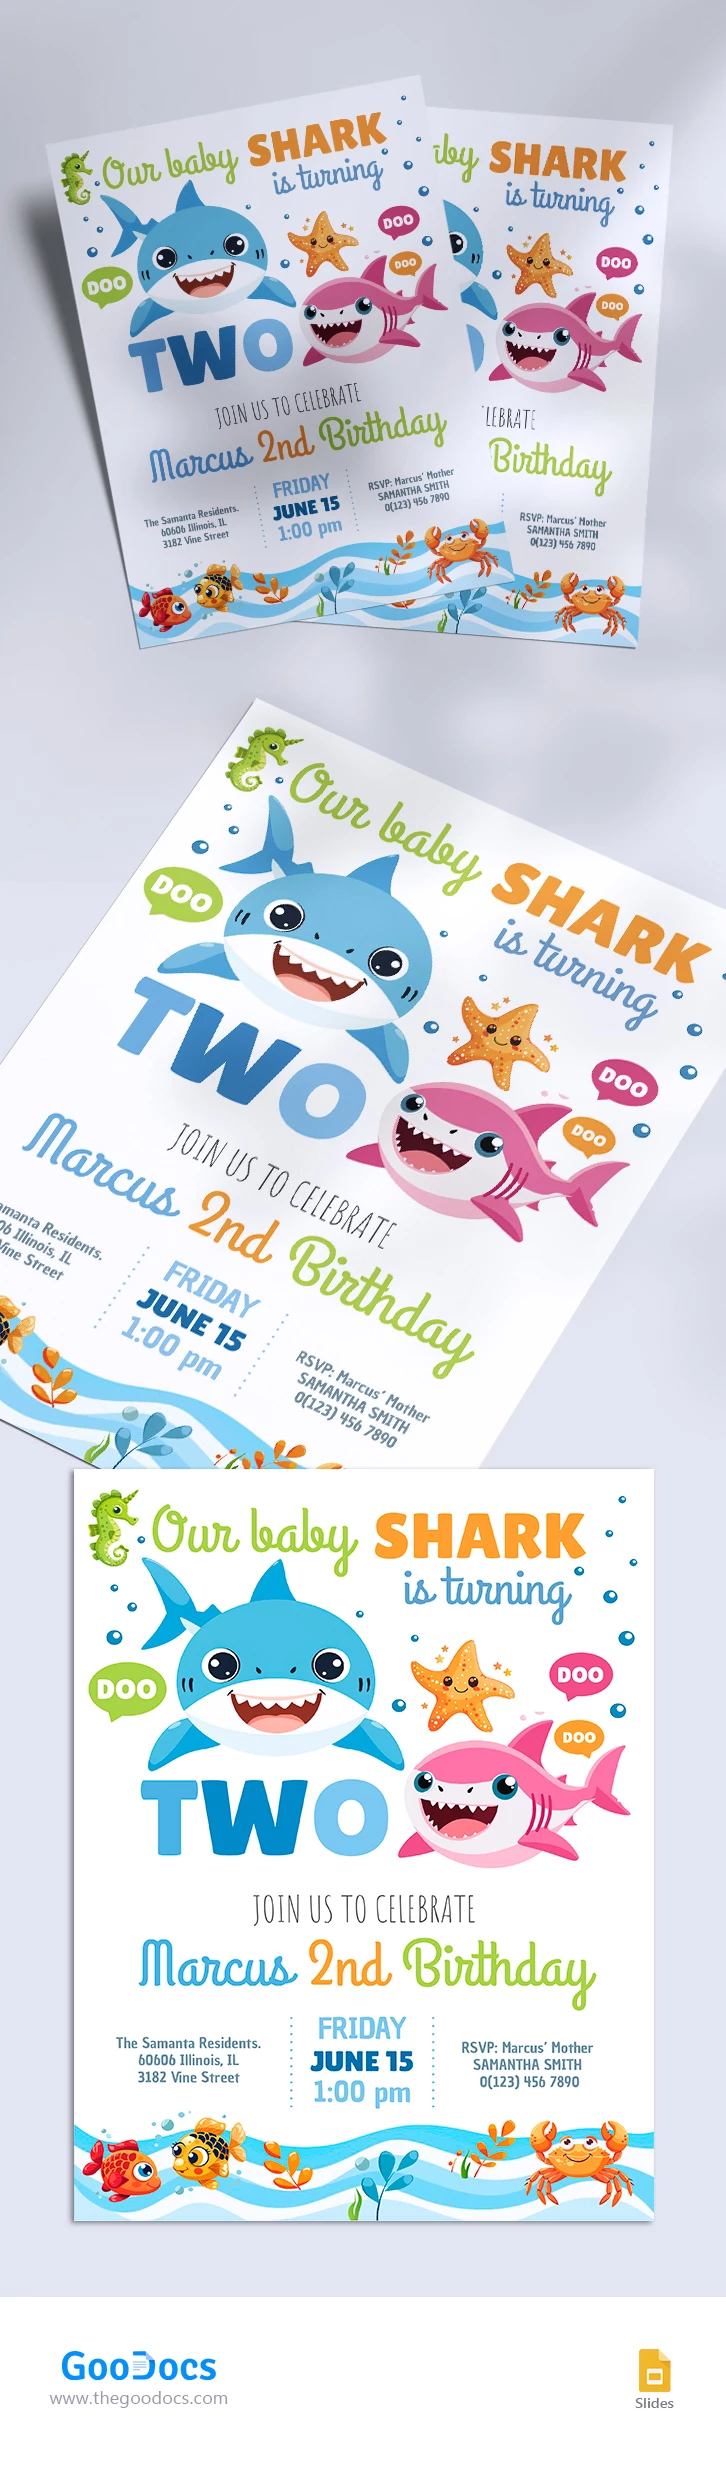 Invitation Baby Shark - free Google Docs Template - 10068413